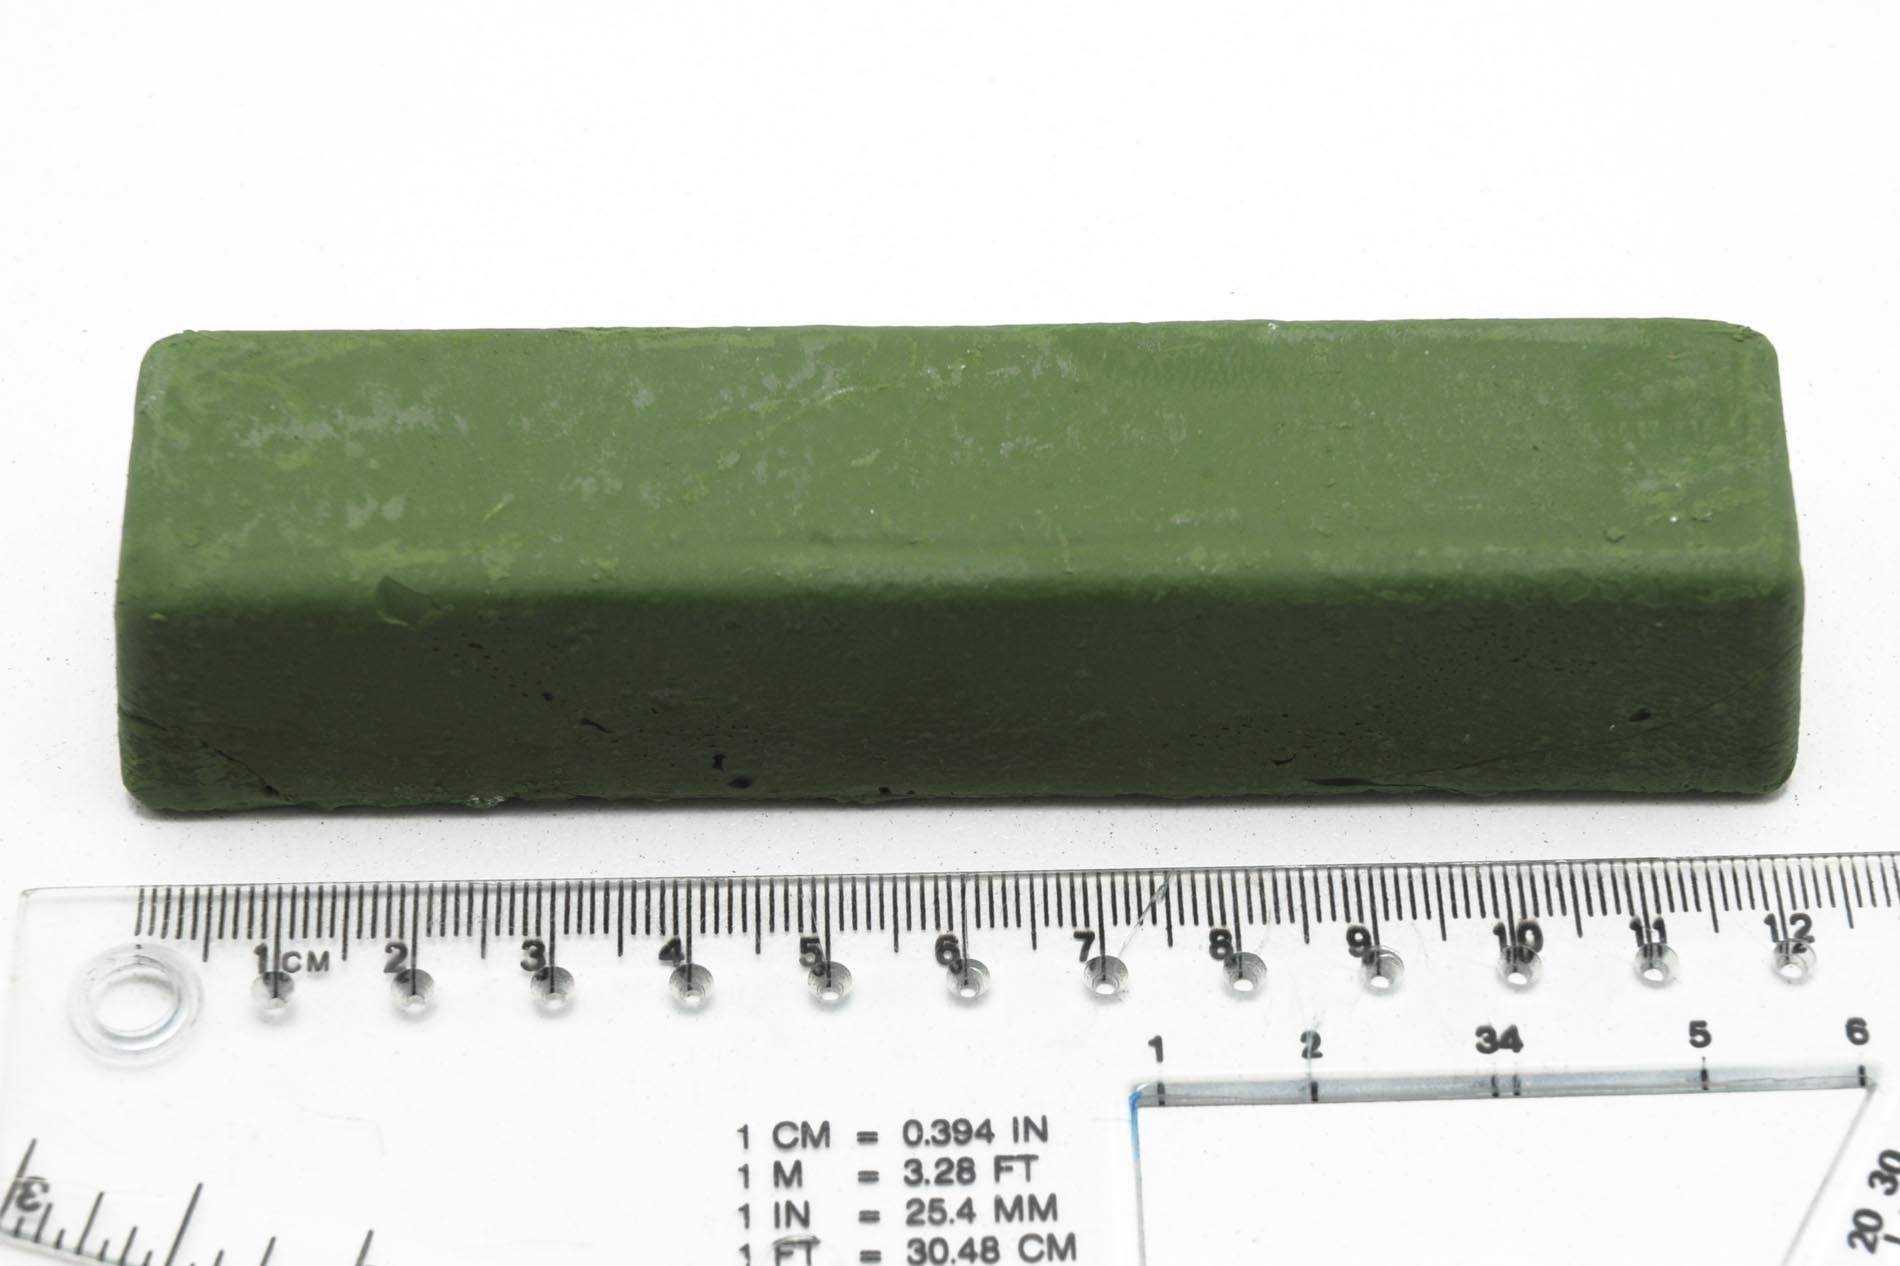 05M08.01-Cera abrasiva verde afilar gubias Veritas 05M08.01-max-3.